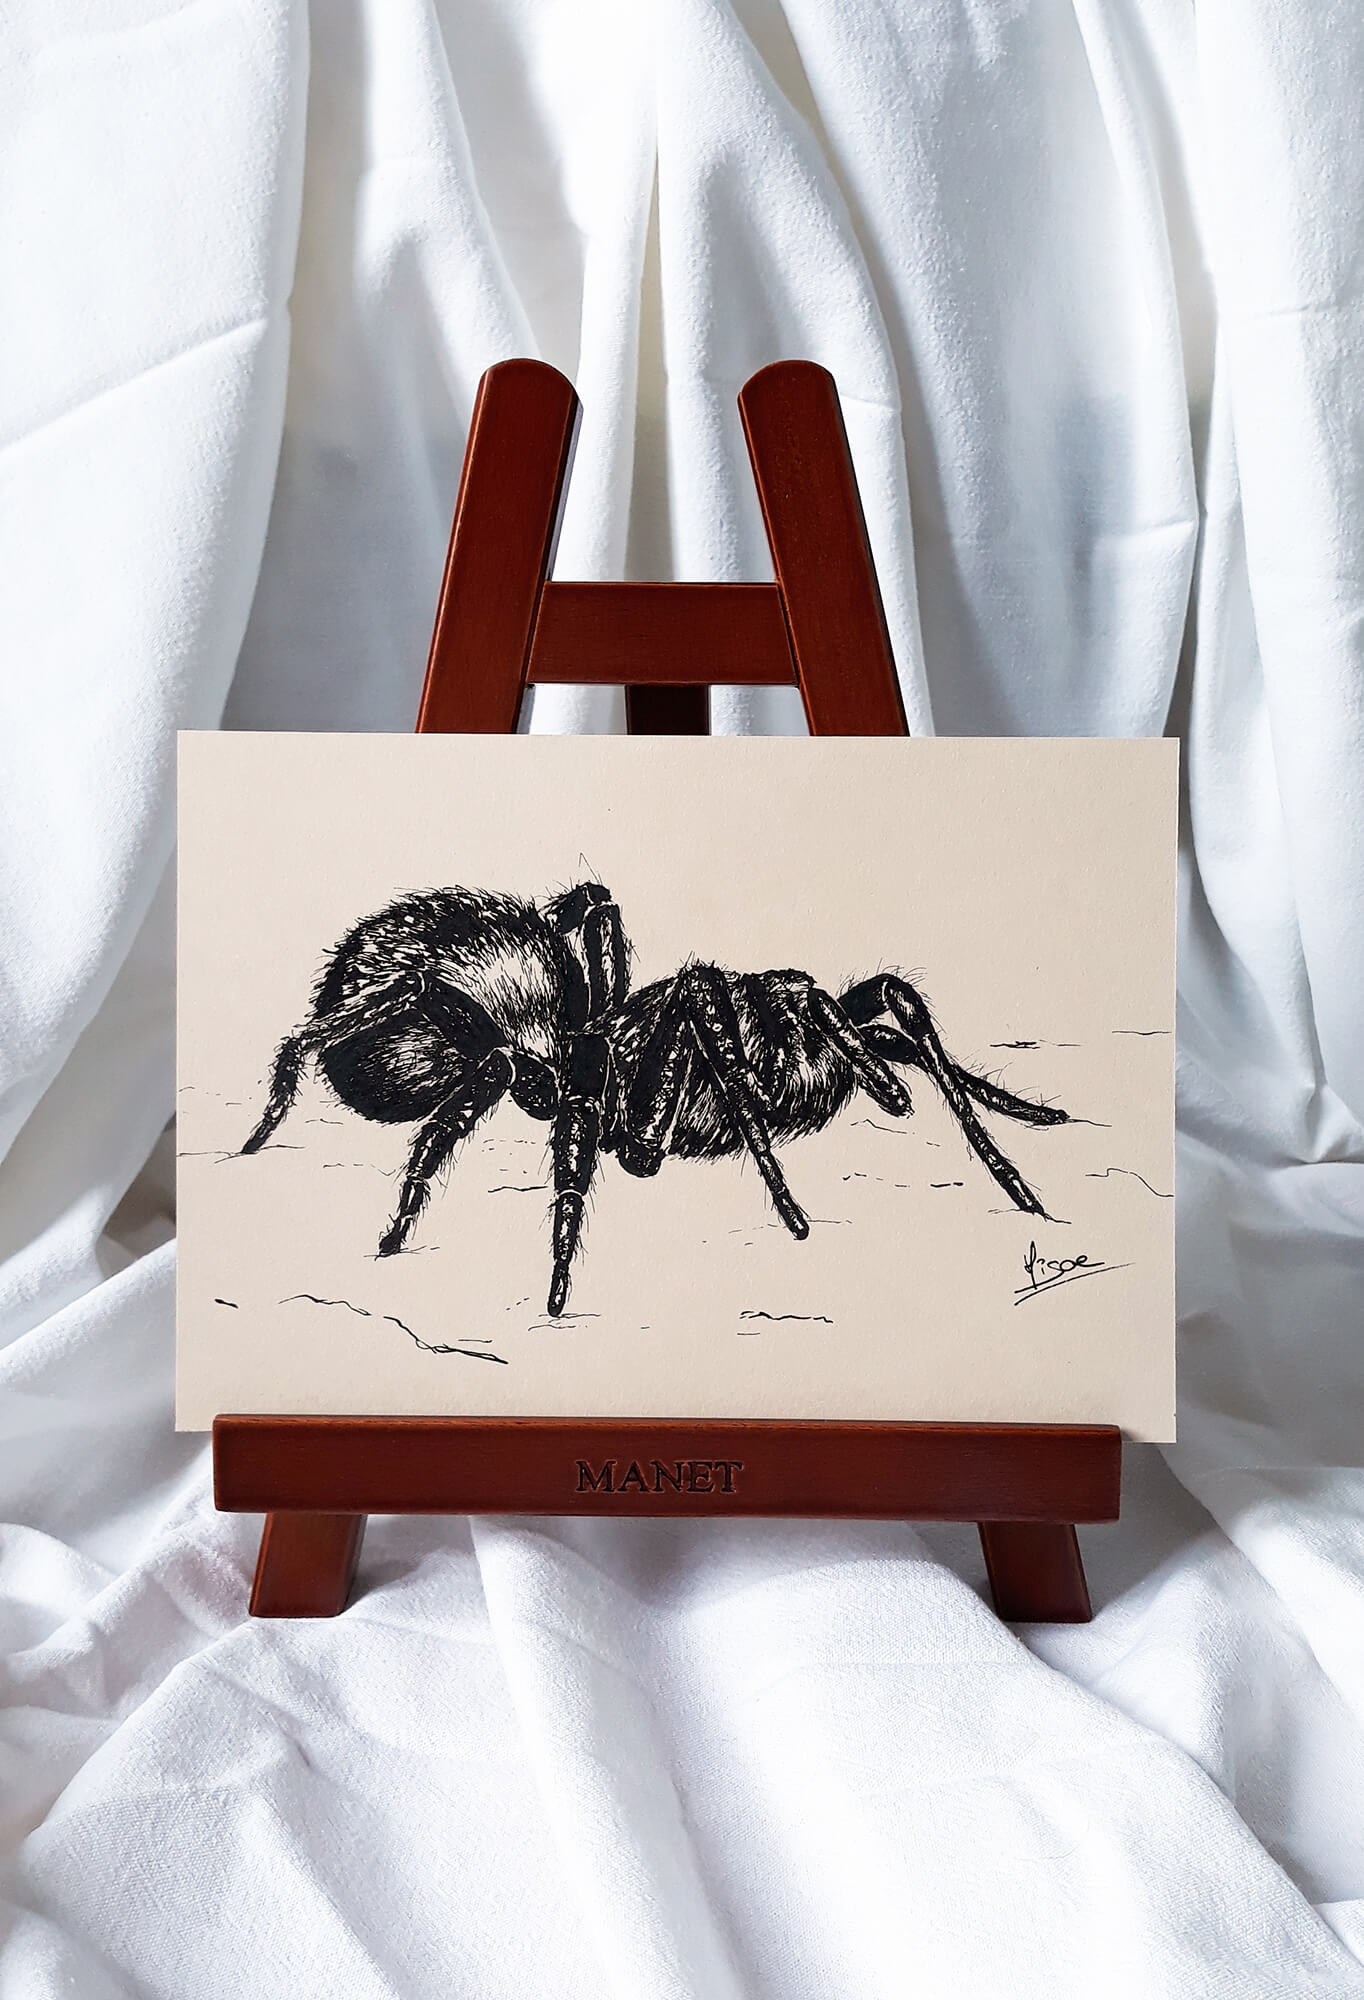 Dessin original à l'encre sur chevalet d'une araignée ©Hisae illustrations